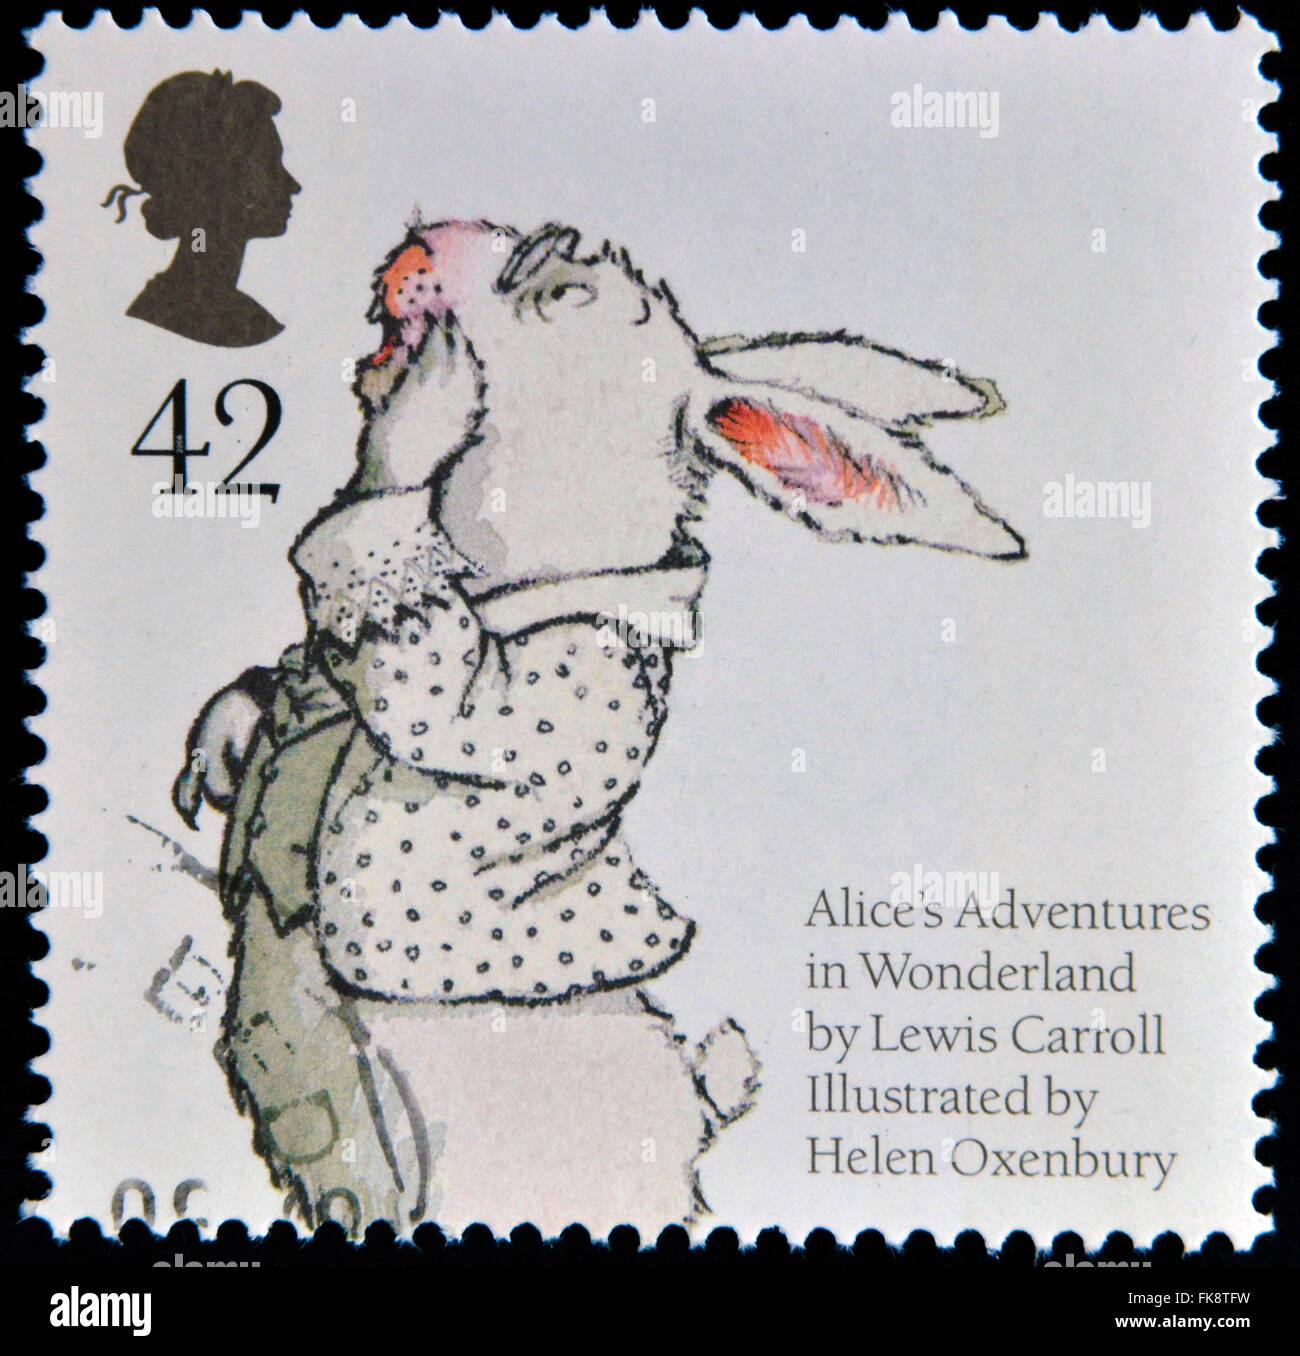 Regno Unito - circa 2006: un timbro stampato in Gran Bretagna dedicato ai racconti di animali, mostra il coniglio bianco da Lewis Caroll's Foto Stock